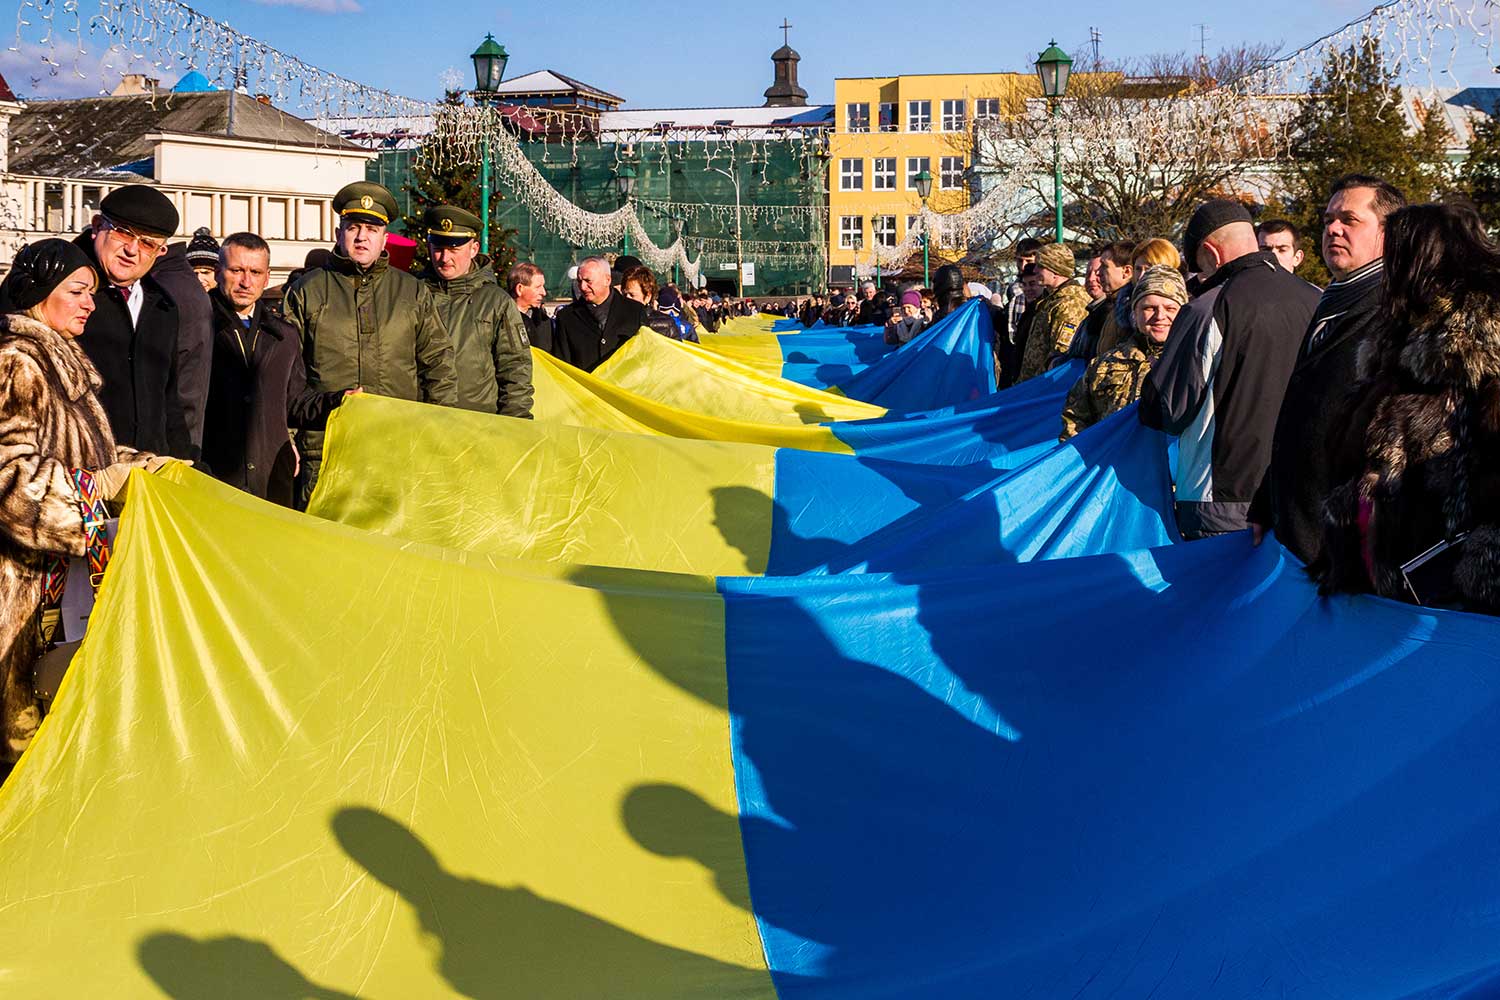 Ukraine Unity Day Large Flag unfolding